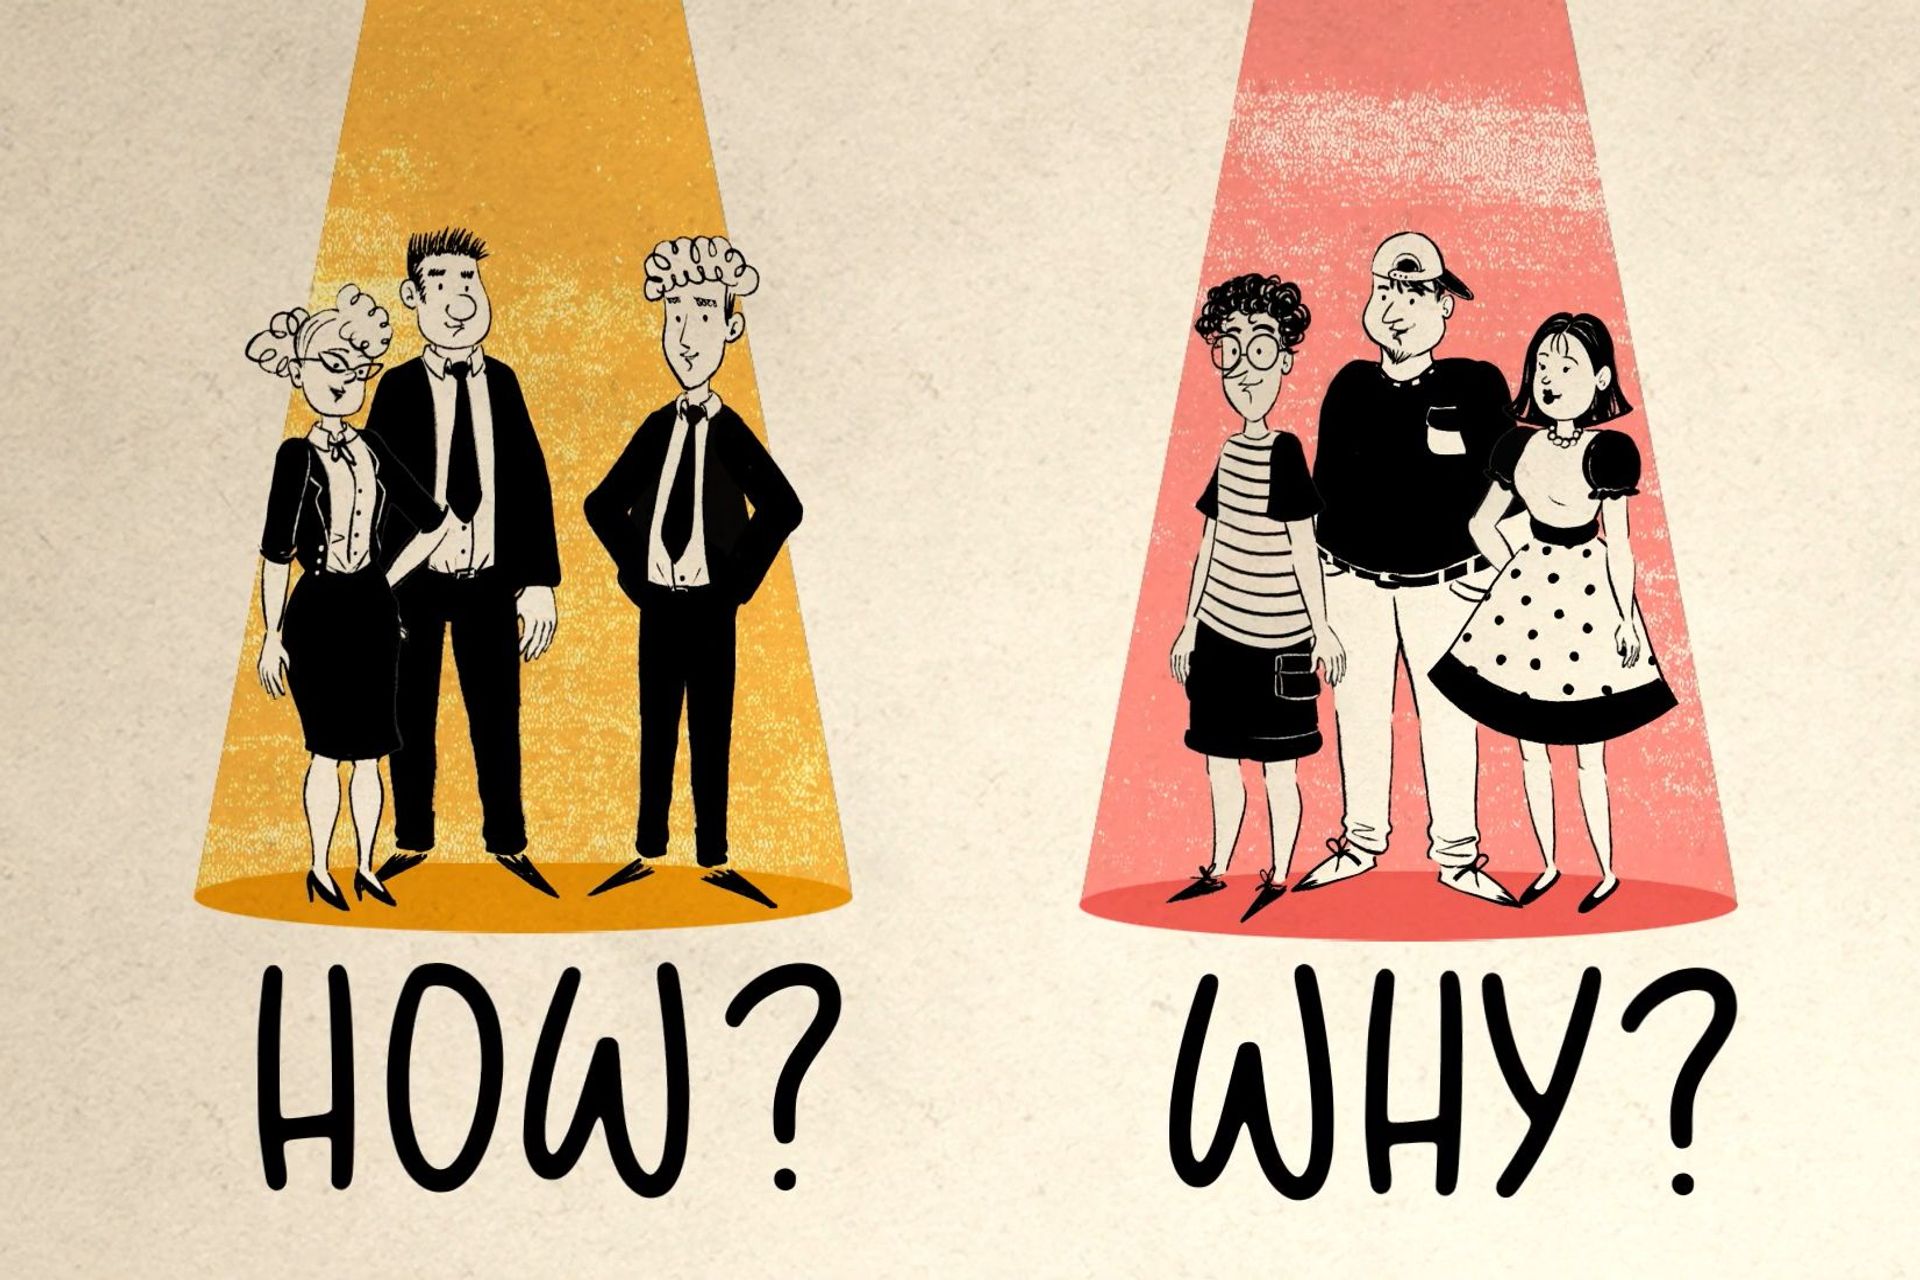 Dilema midis "Si" dhe "Pse" në anglisht në lidhje me dy lloje të ndryshme të audiencës